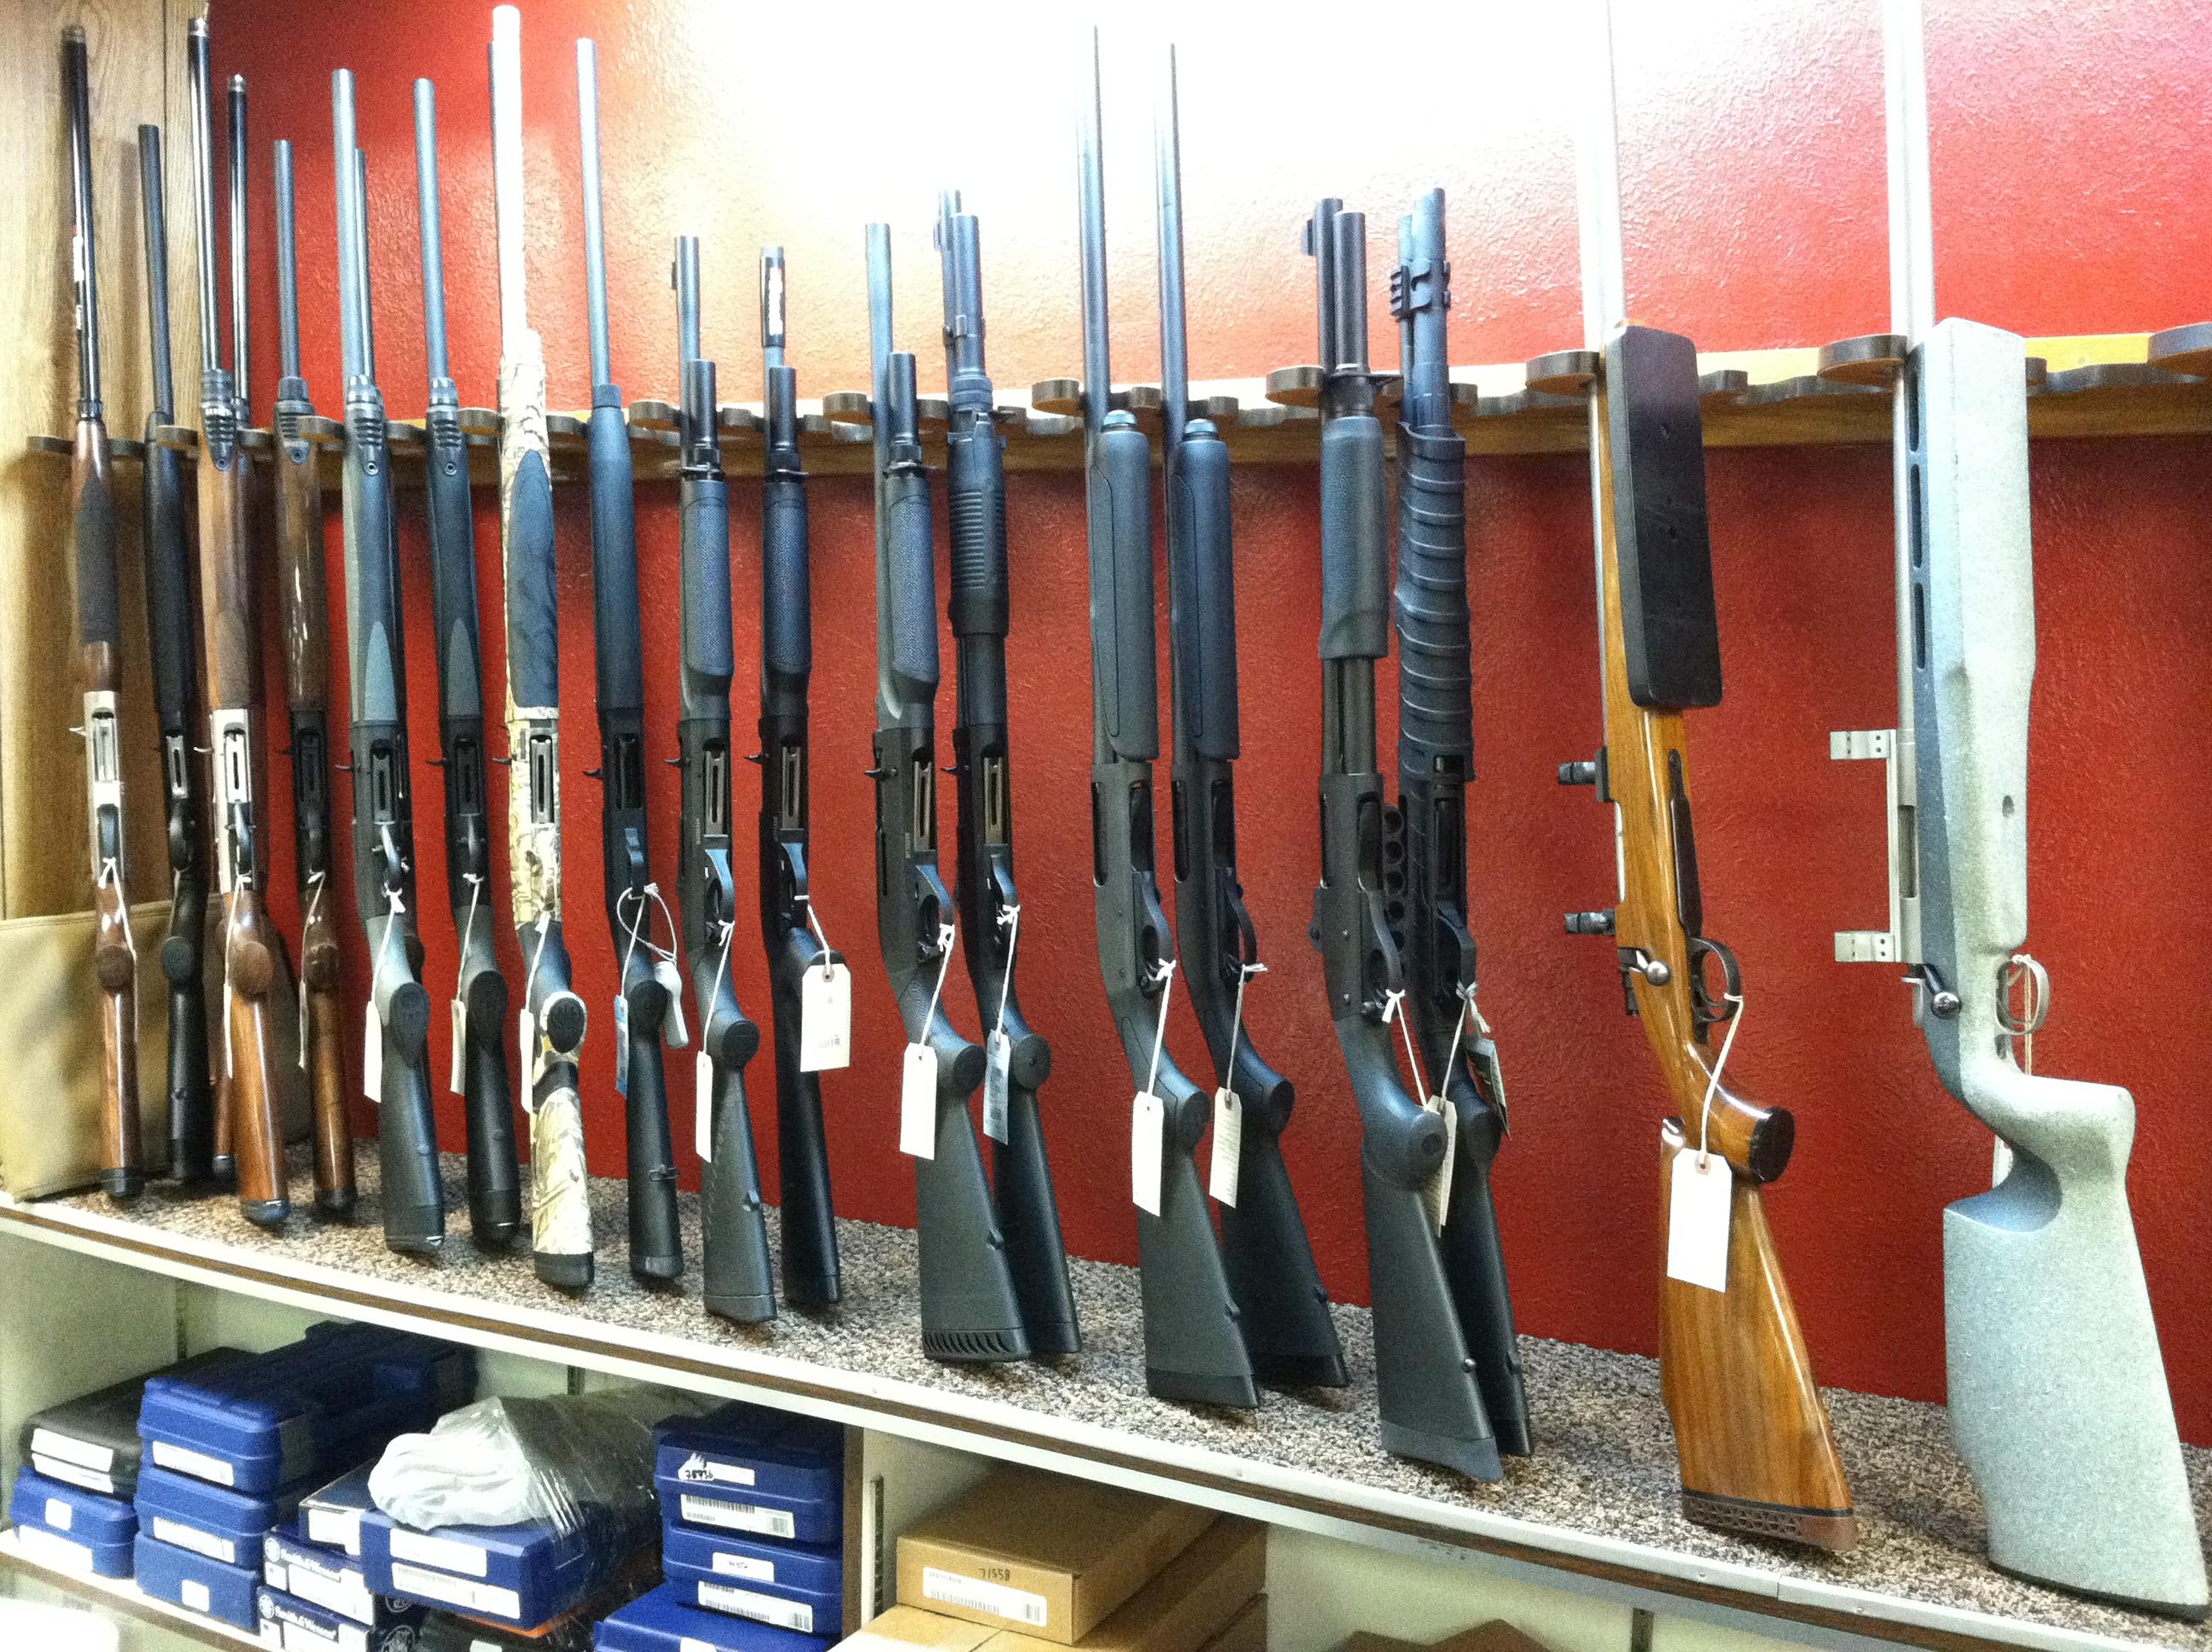 Photo: Rifles on display at an Aurora gun store